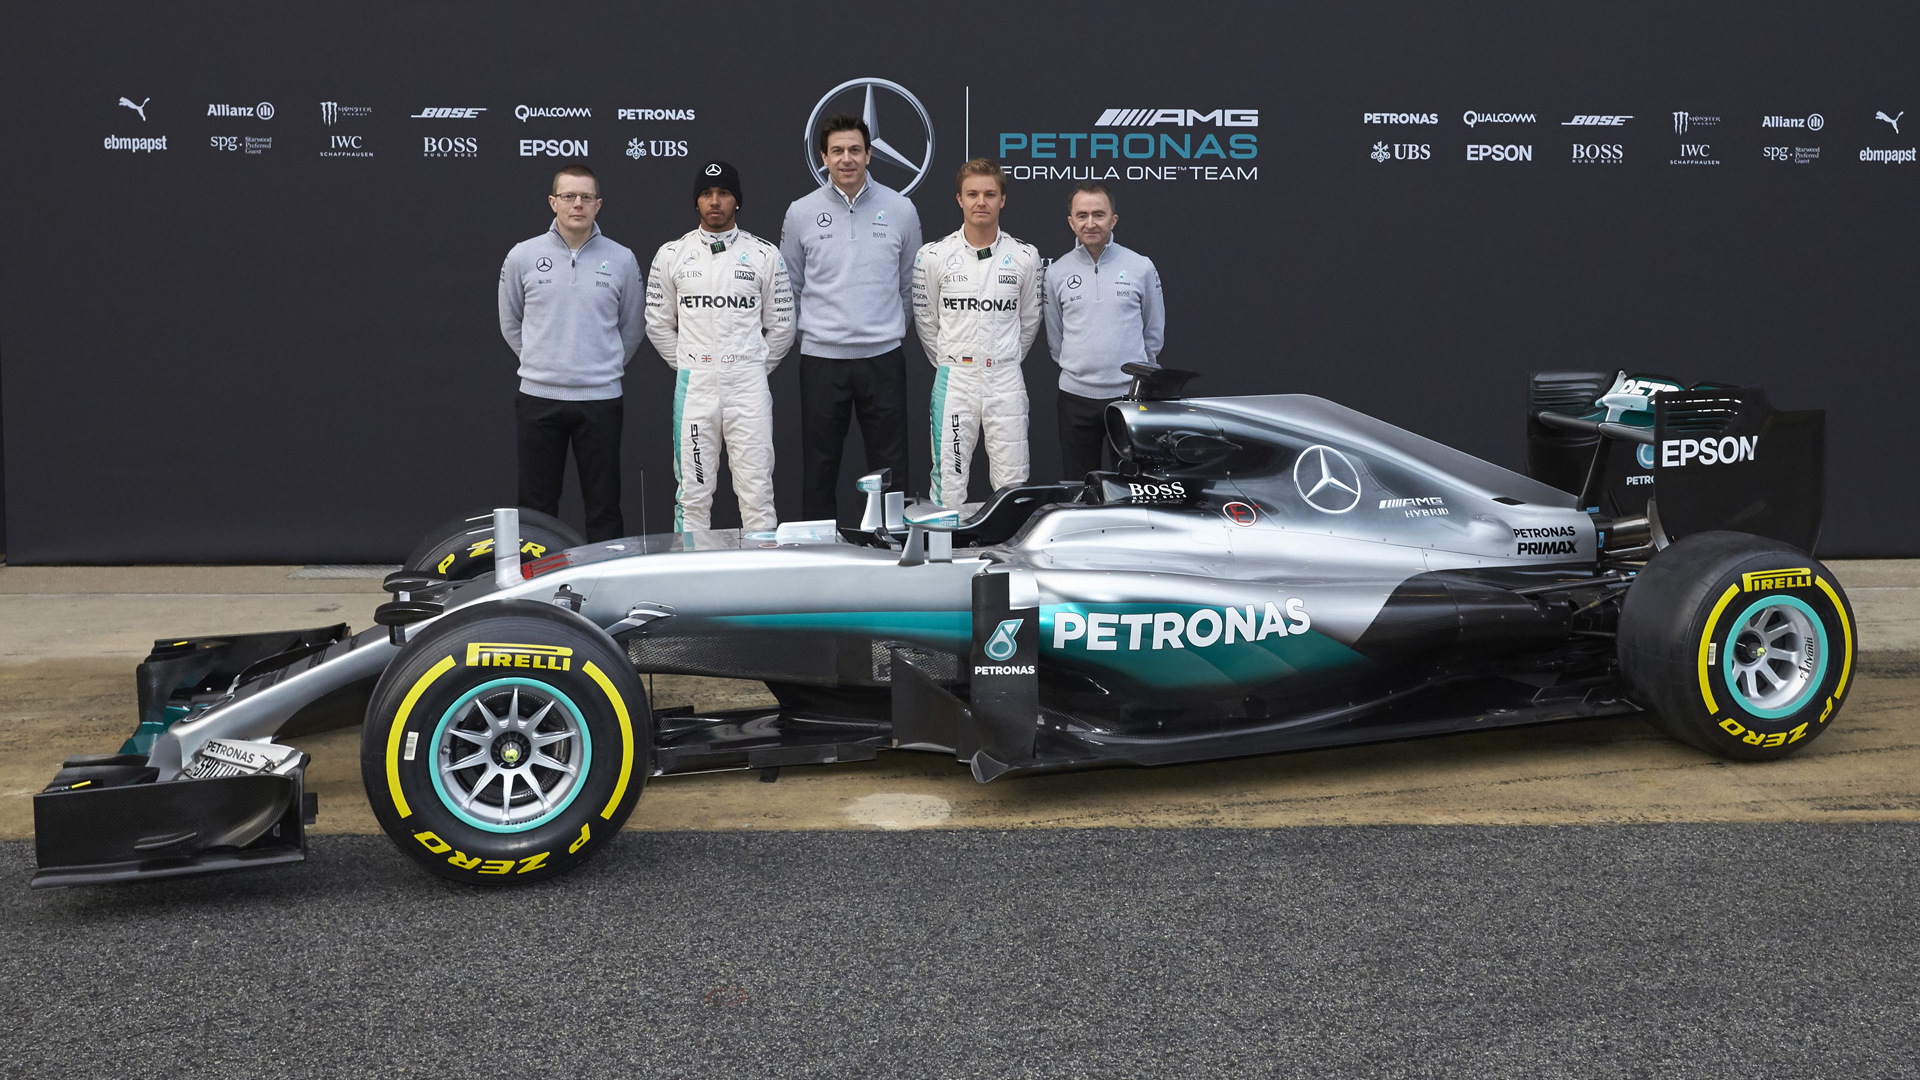 Mercedes AMG W07 Hybrid 2016 Formula One car